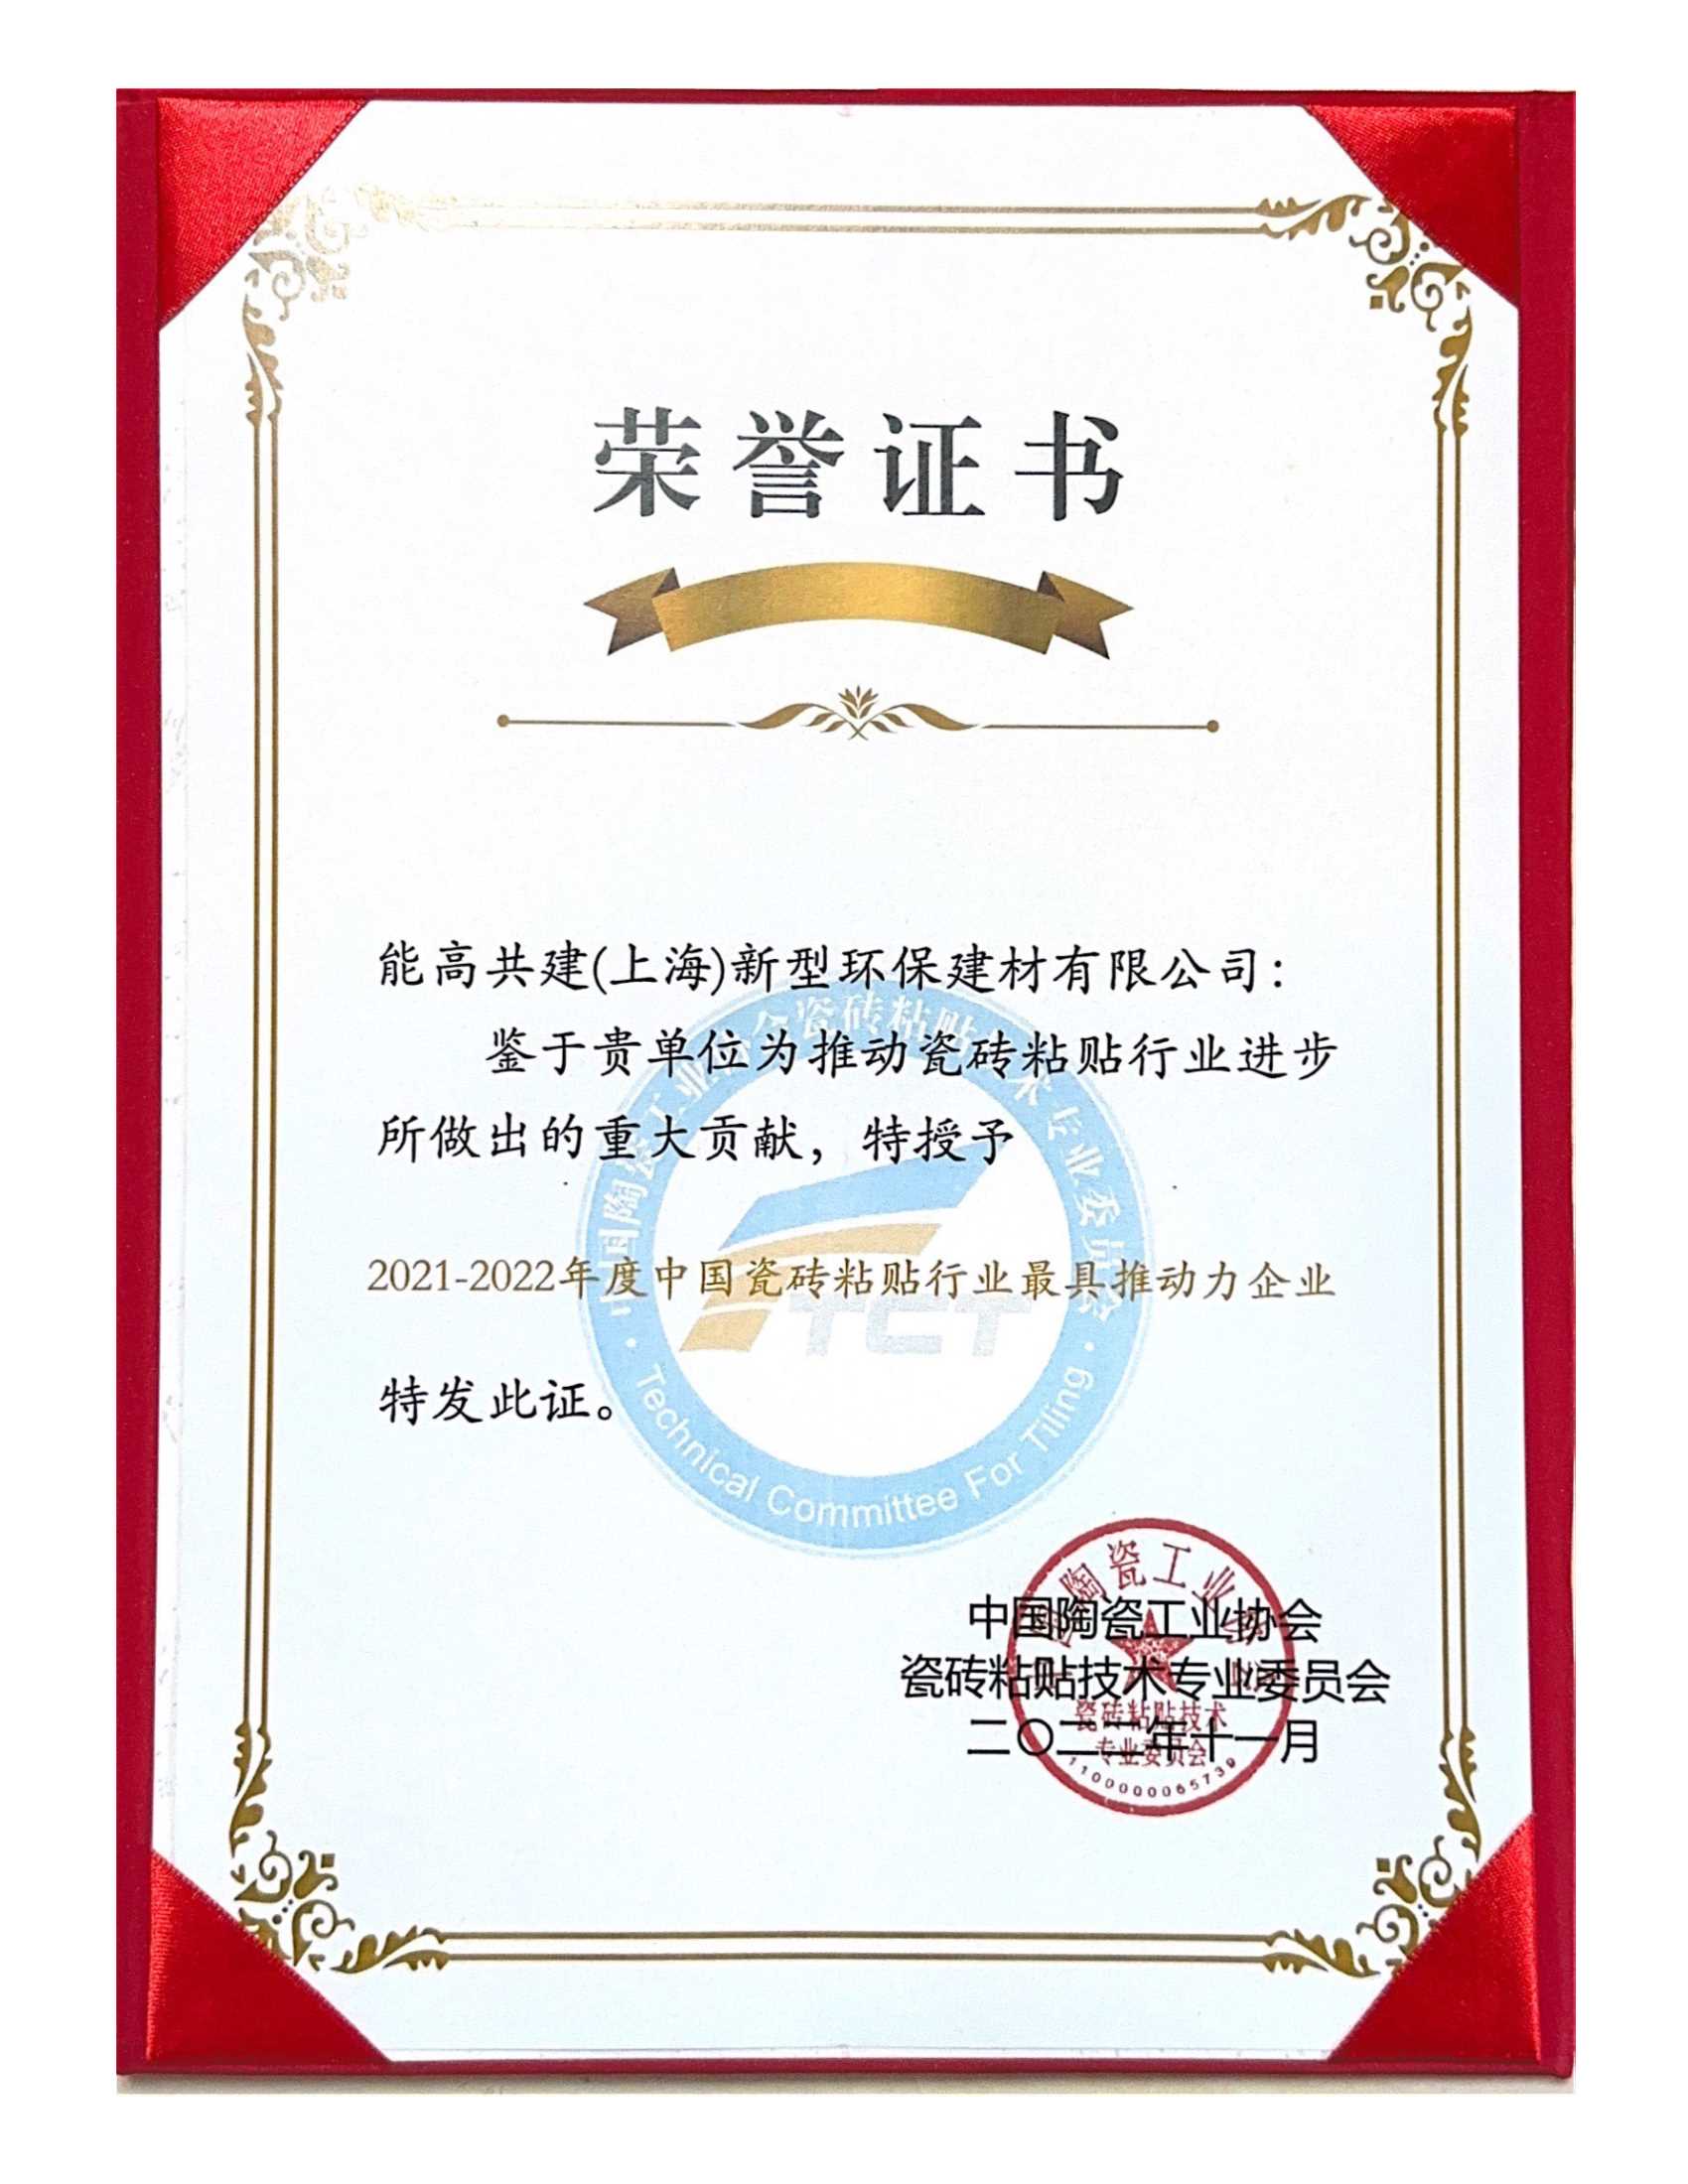 42-1、21-22年度中国瓷砖粘贴行业最具推动力企业-证书.Jpeg